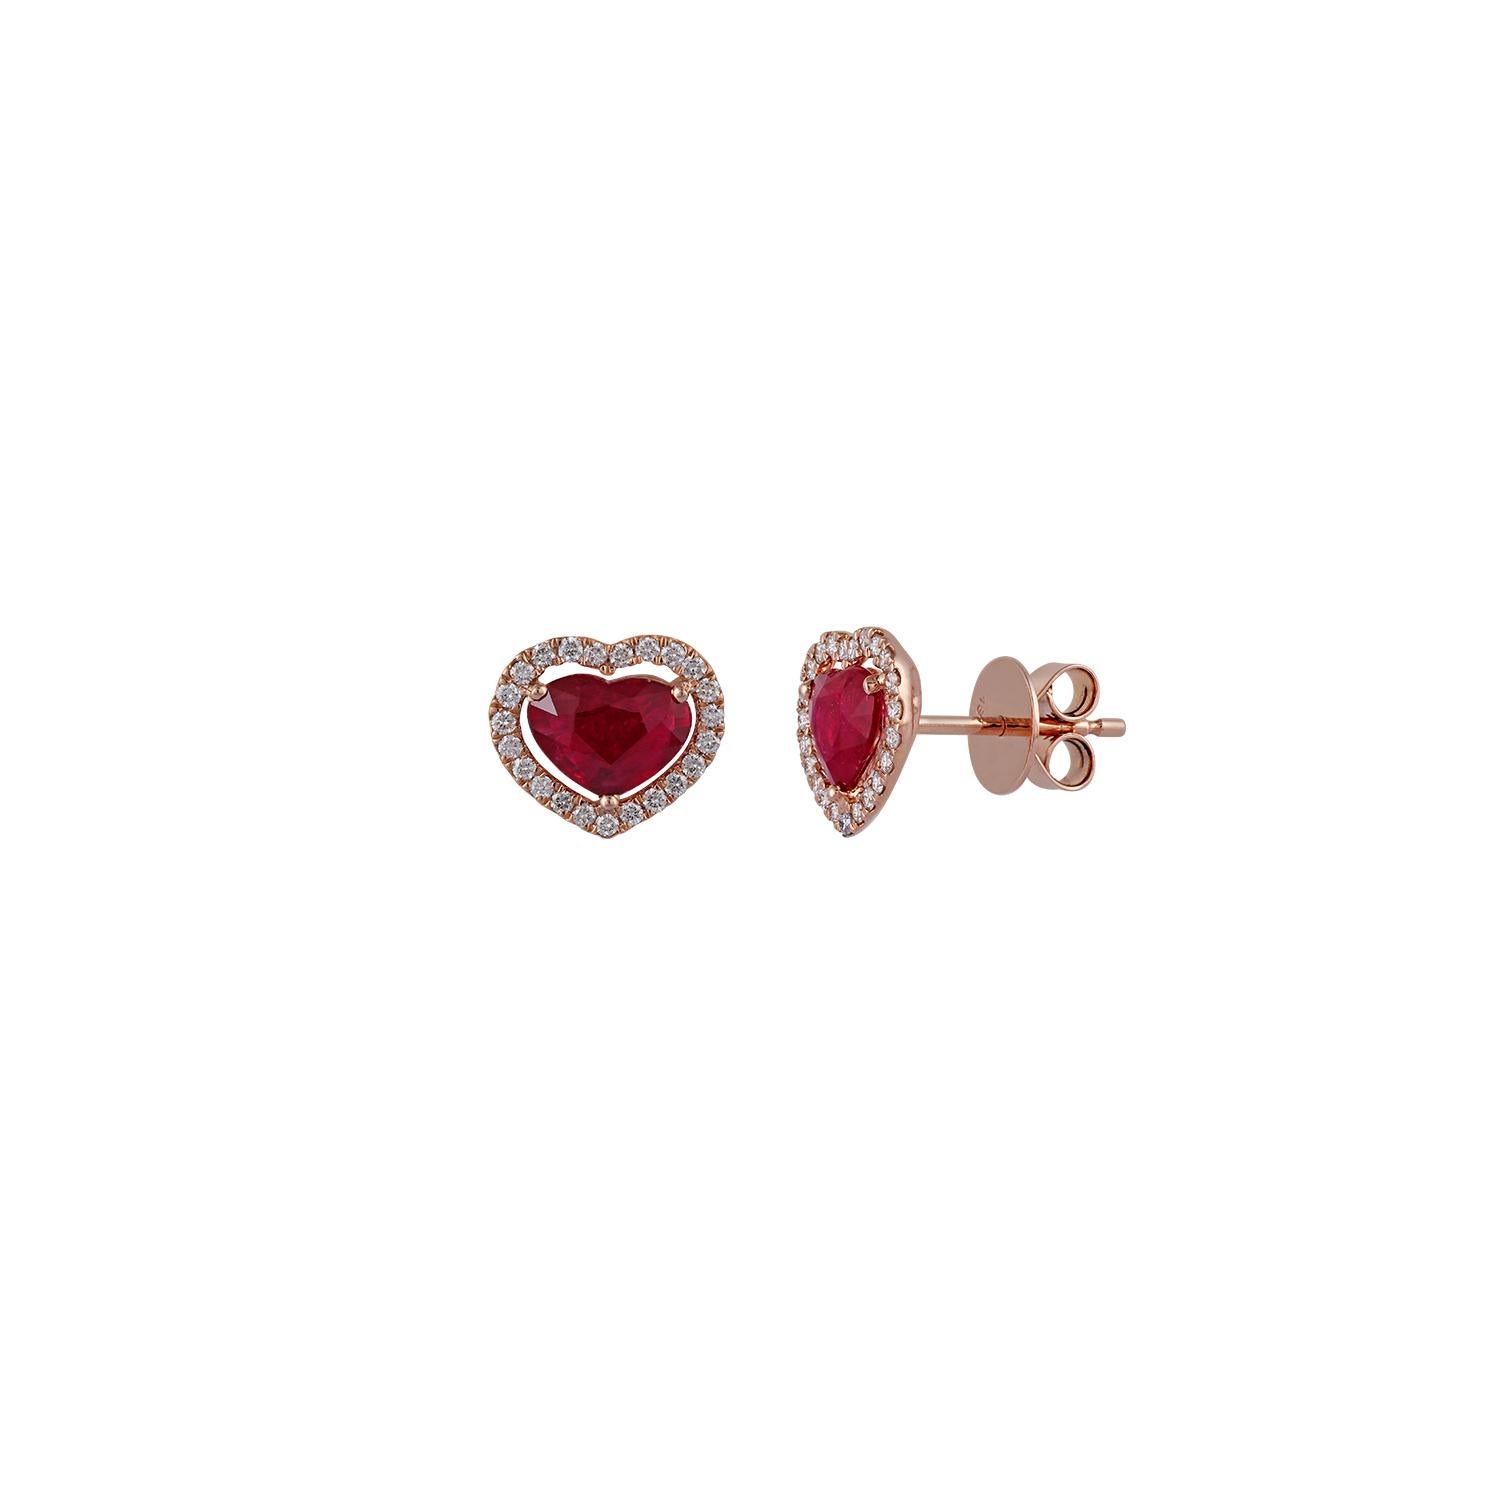 Heart Cut Heart Shaped Ruby Diamond Earring Studded in 18 Karat Rose Gold